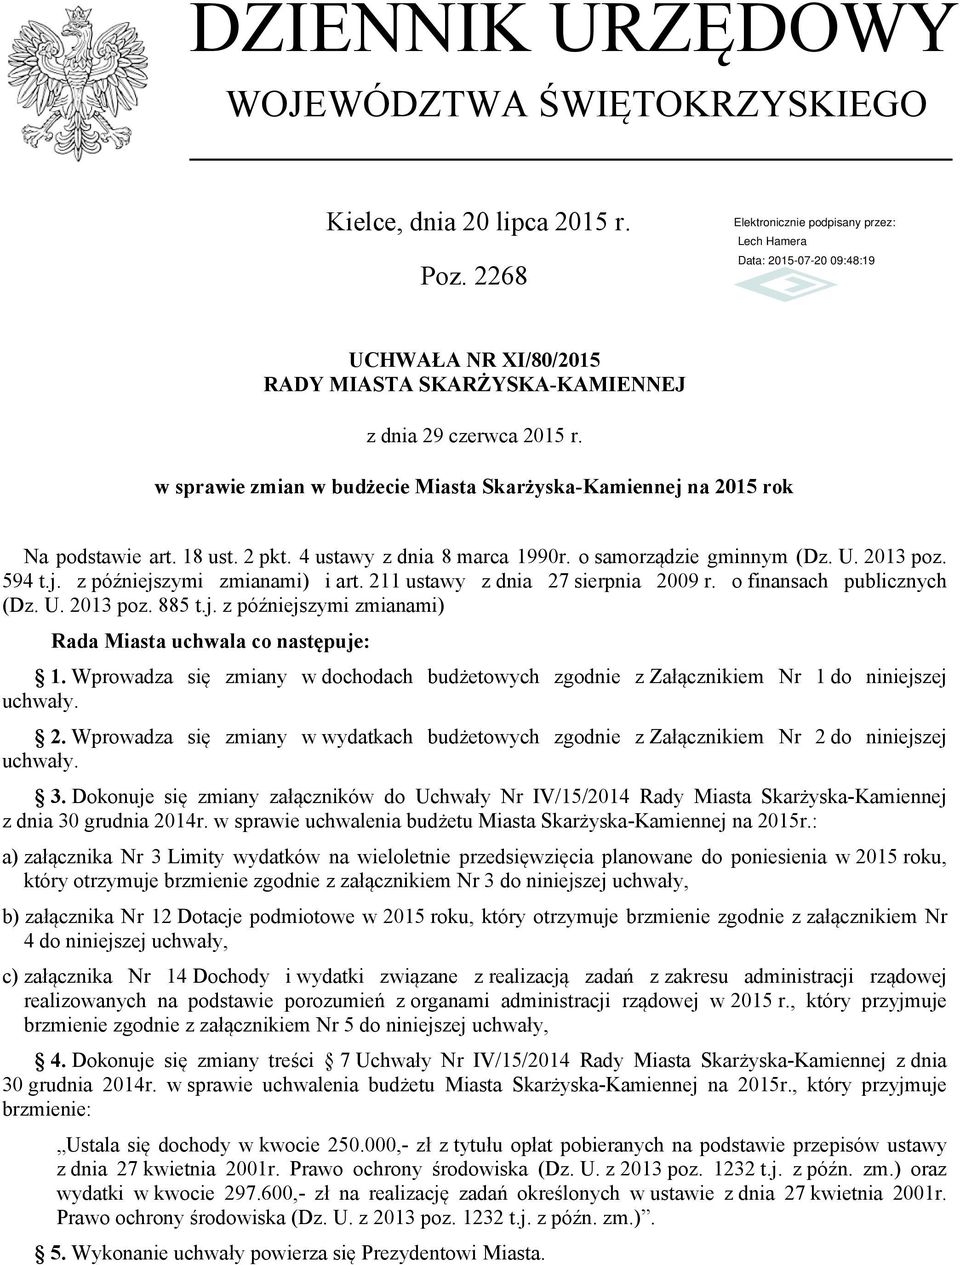 211 ustawy z dnia 27 sierpnia 2009 r. o finansach publicznych (Dz. U. 2013 poz. 885 t.j. z późniejszymi zmianami) Rada uchwala co następuje: 1.